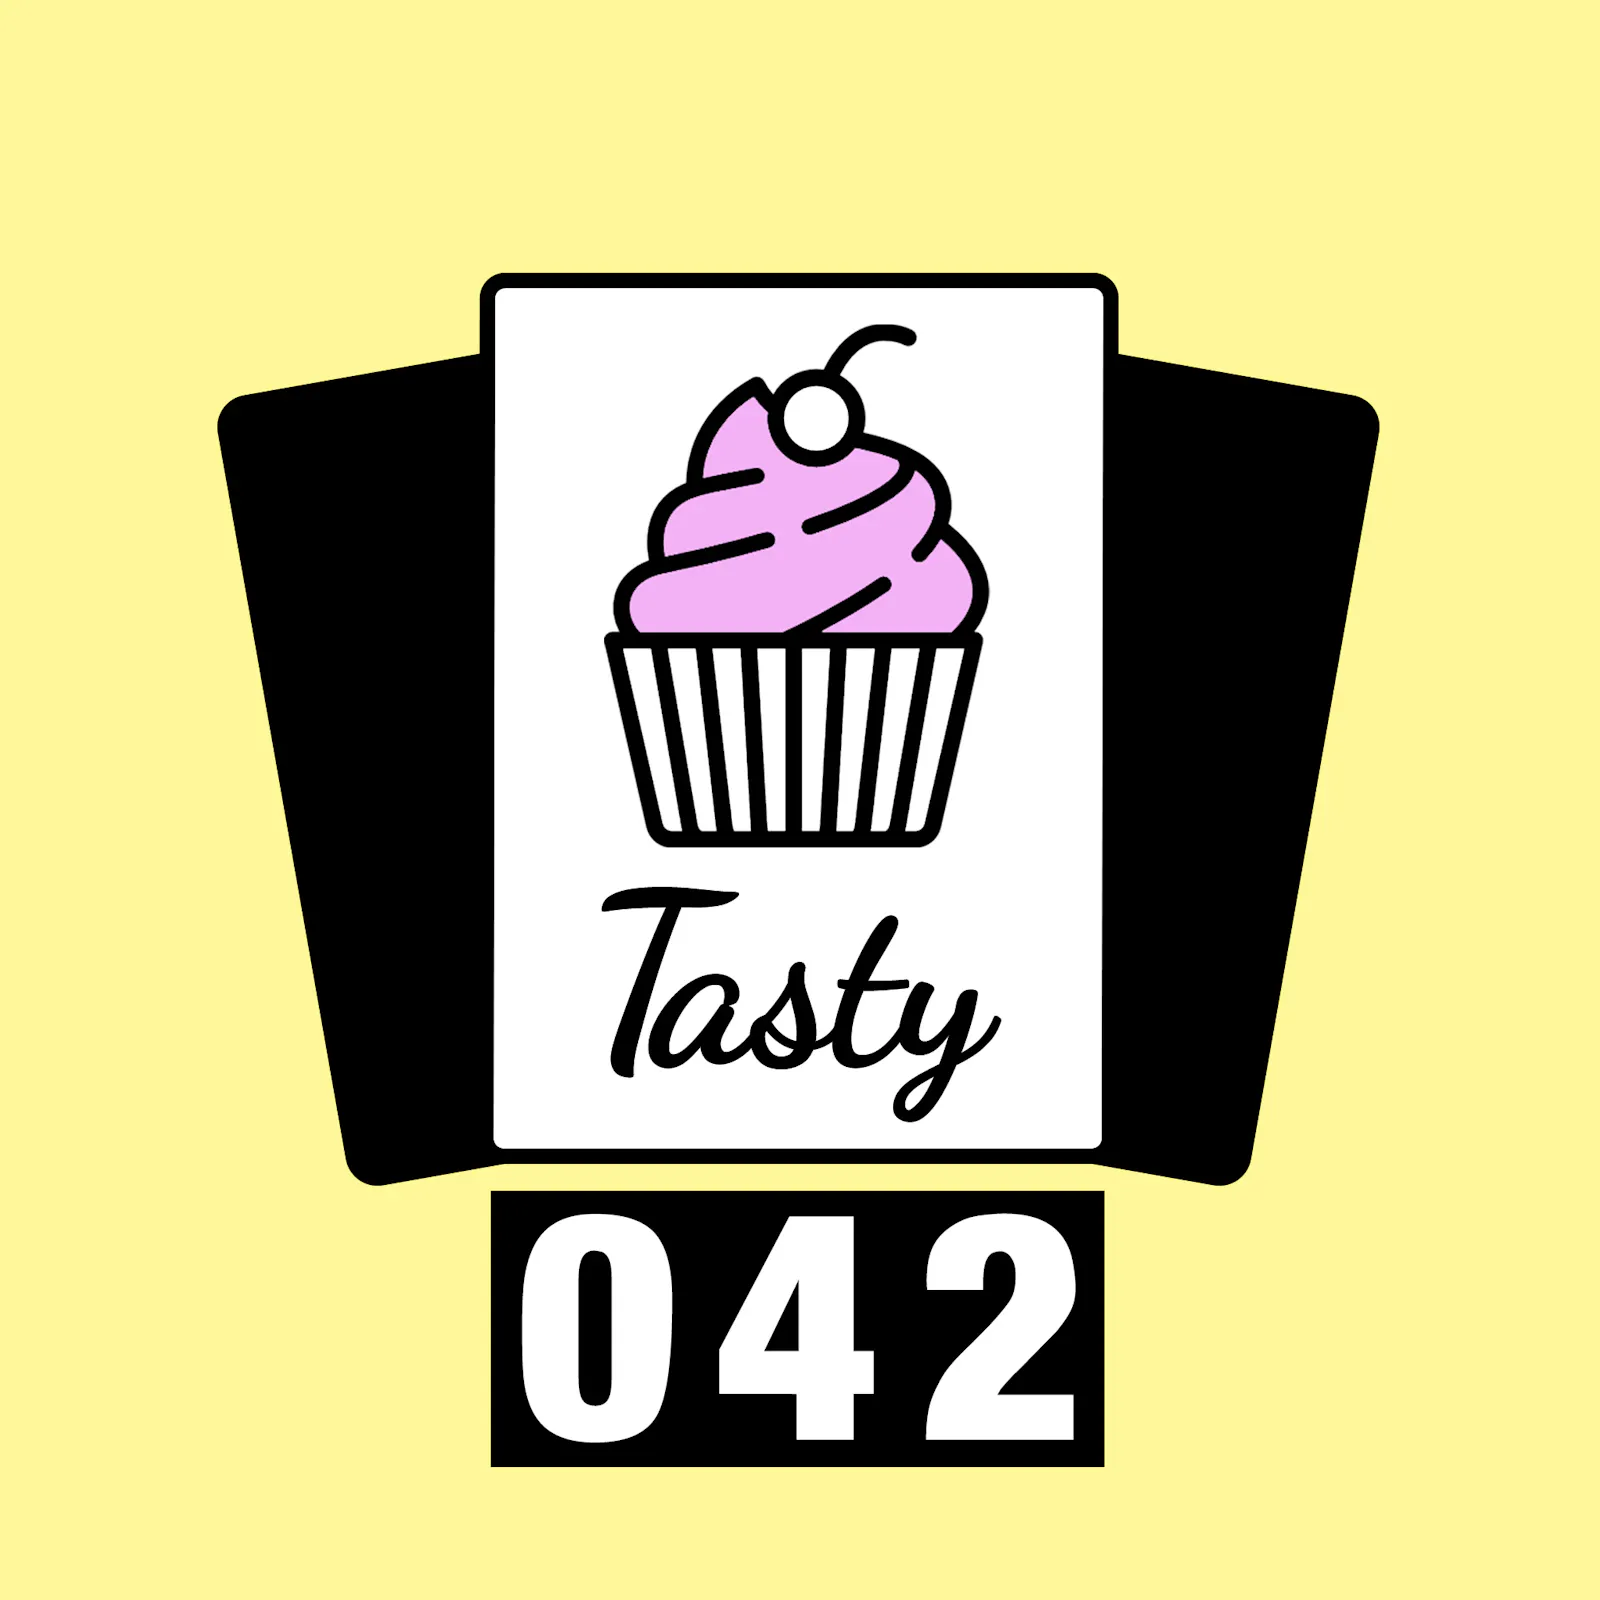 Coverbild: Ein rosa Muffin mit den Schriftzug Tasty darunter und die Nummer 42